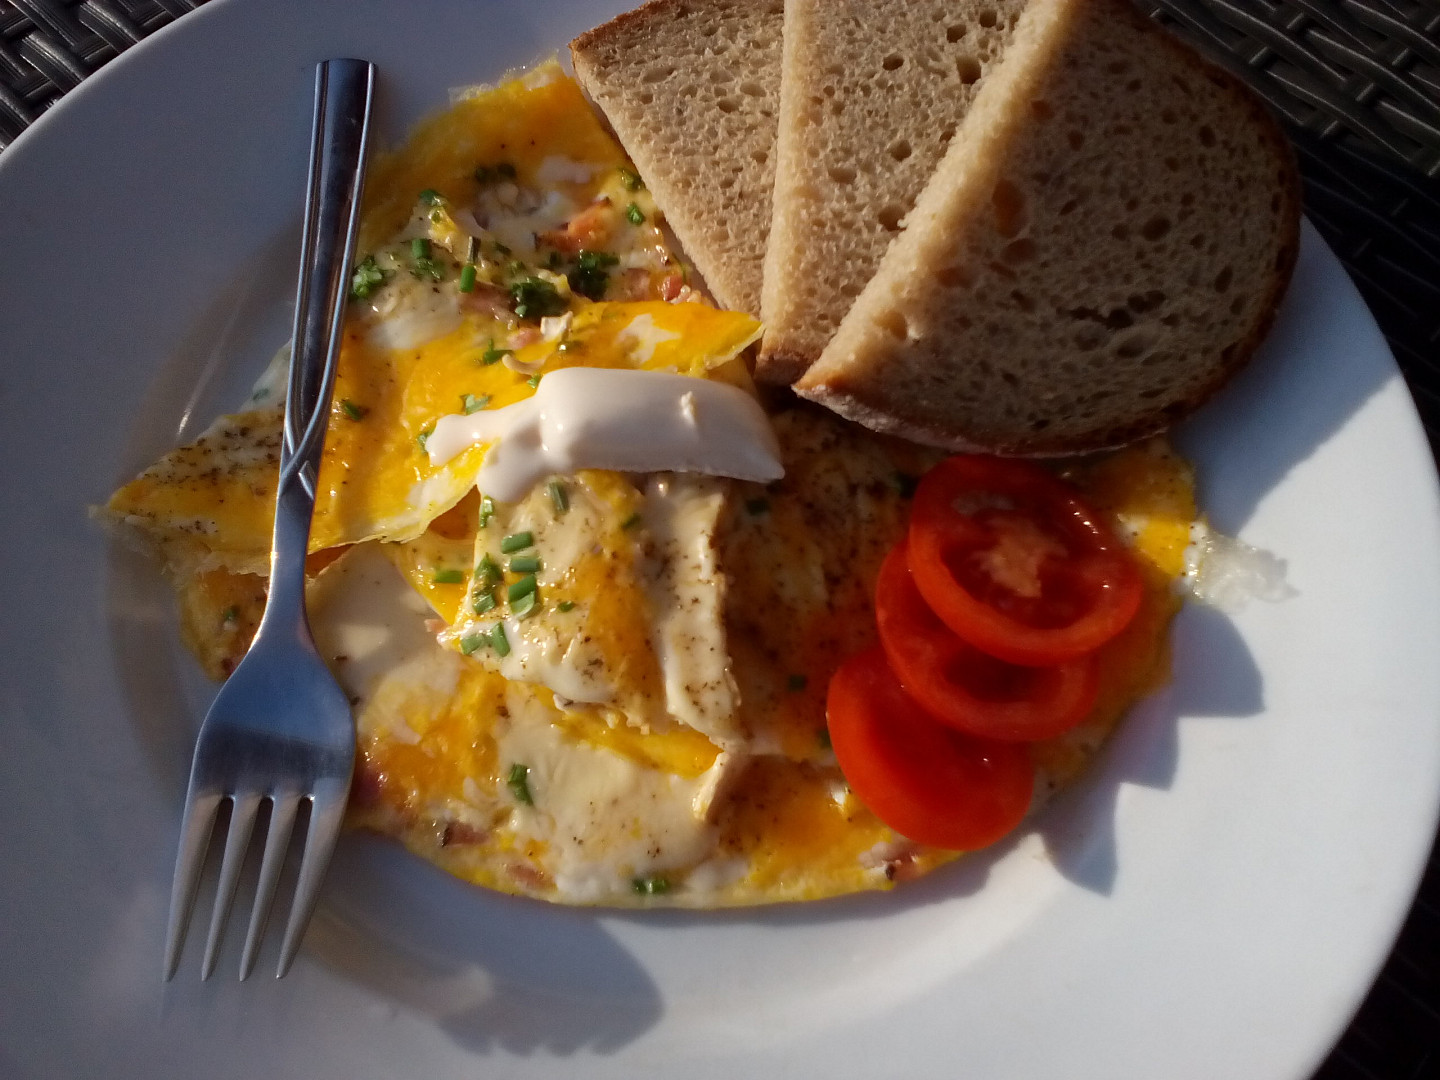 Hermelínová omeleta